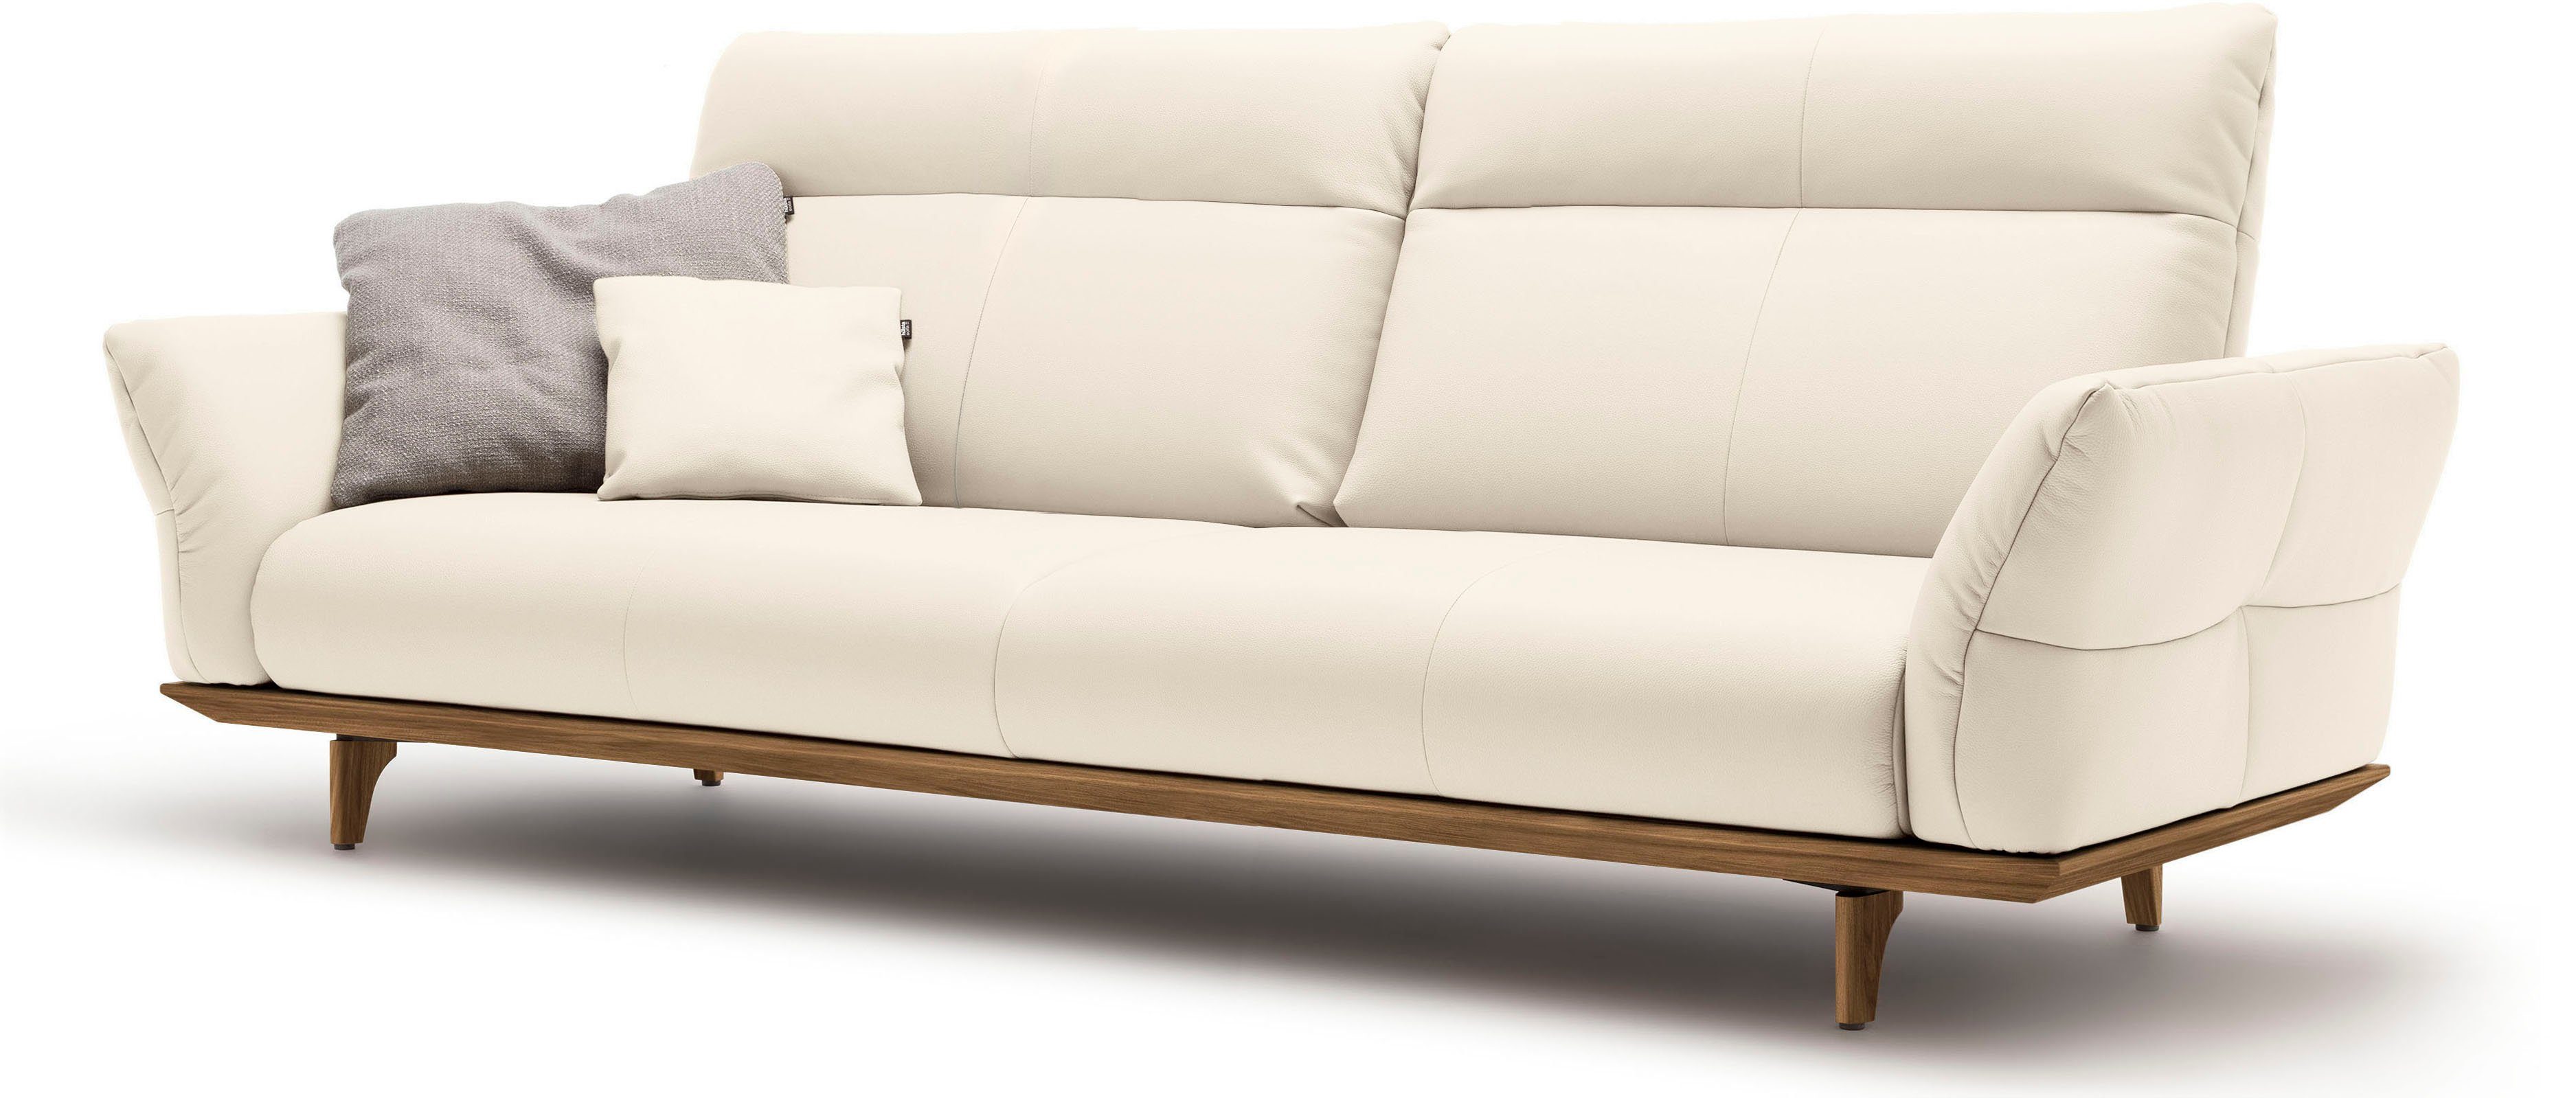 cm Füße sofa 248 4-Sitzer Nussbaum, Sockel Nussbaum, hs.460, hülsta in Breite